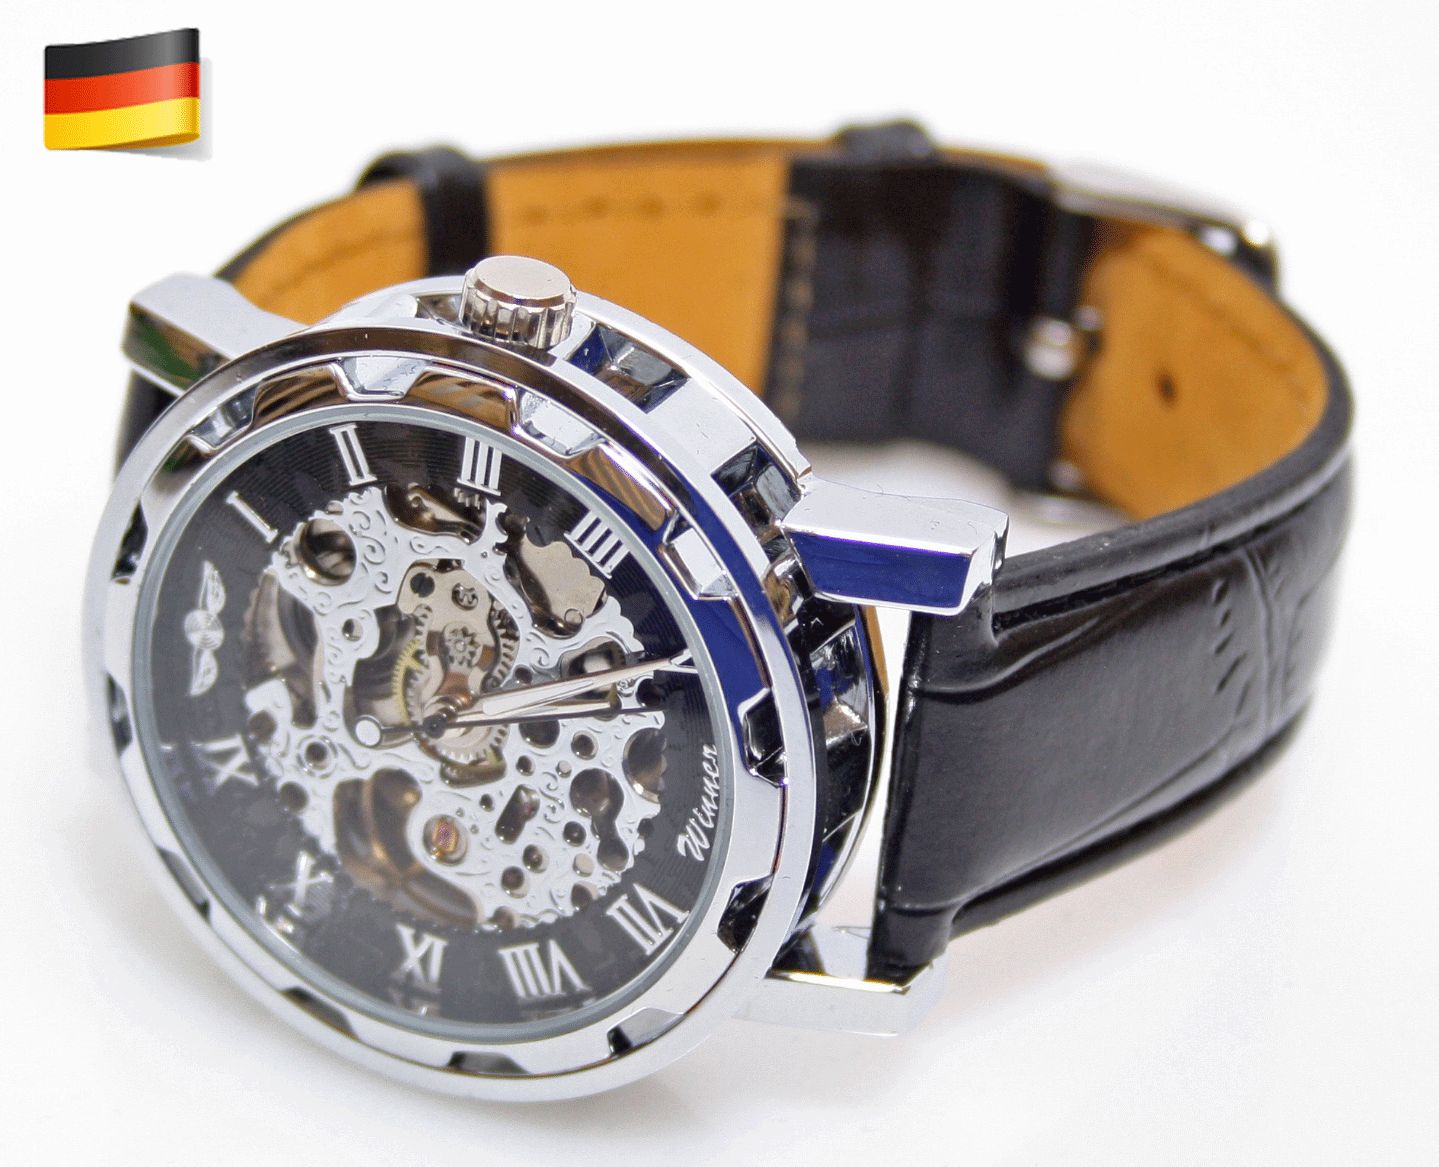 DE Herren Automatik Uhr Armbanduhr Herrenuhr Skelett NEU .Winner.a419